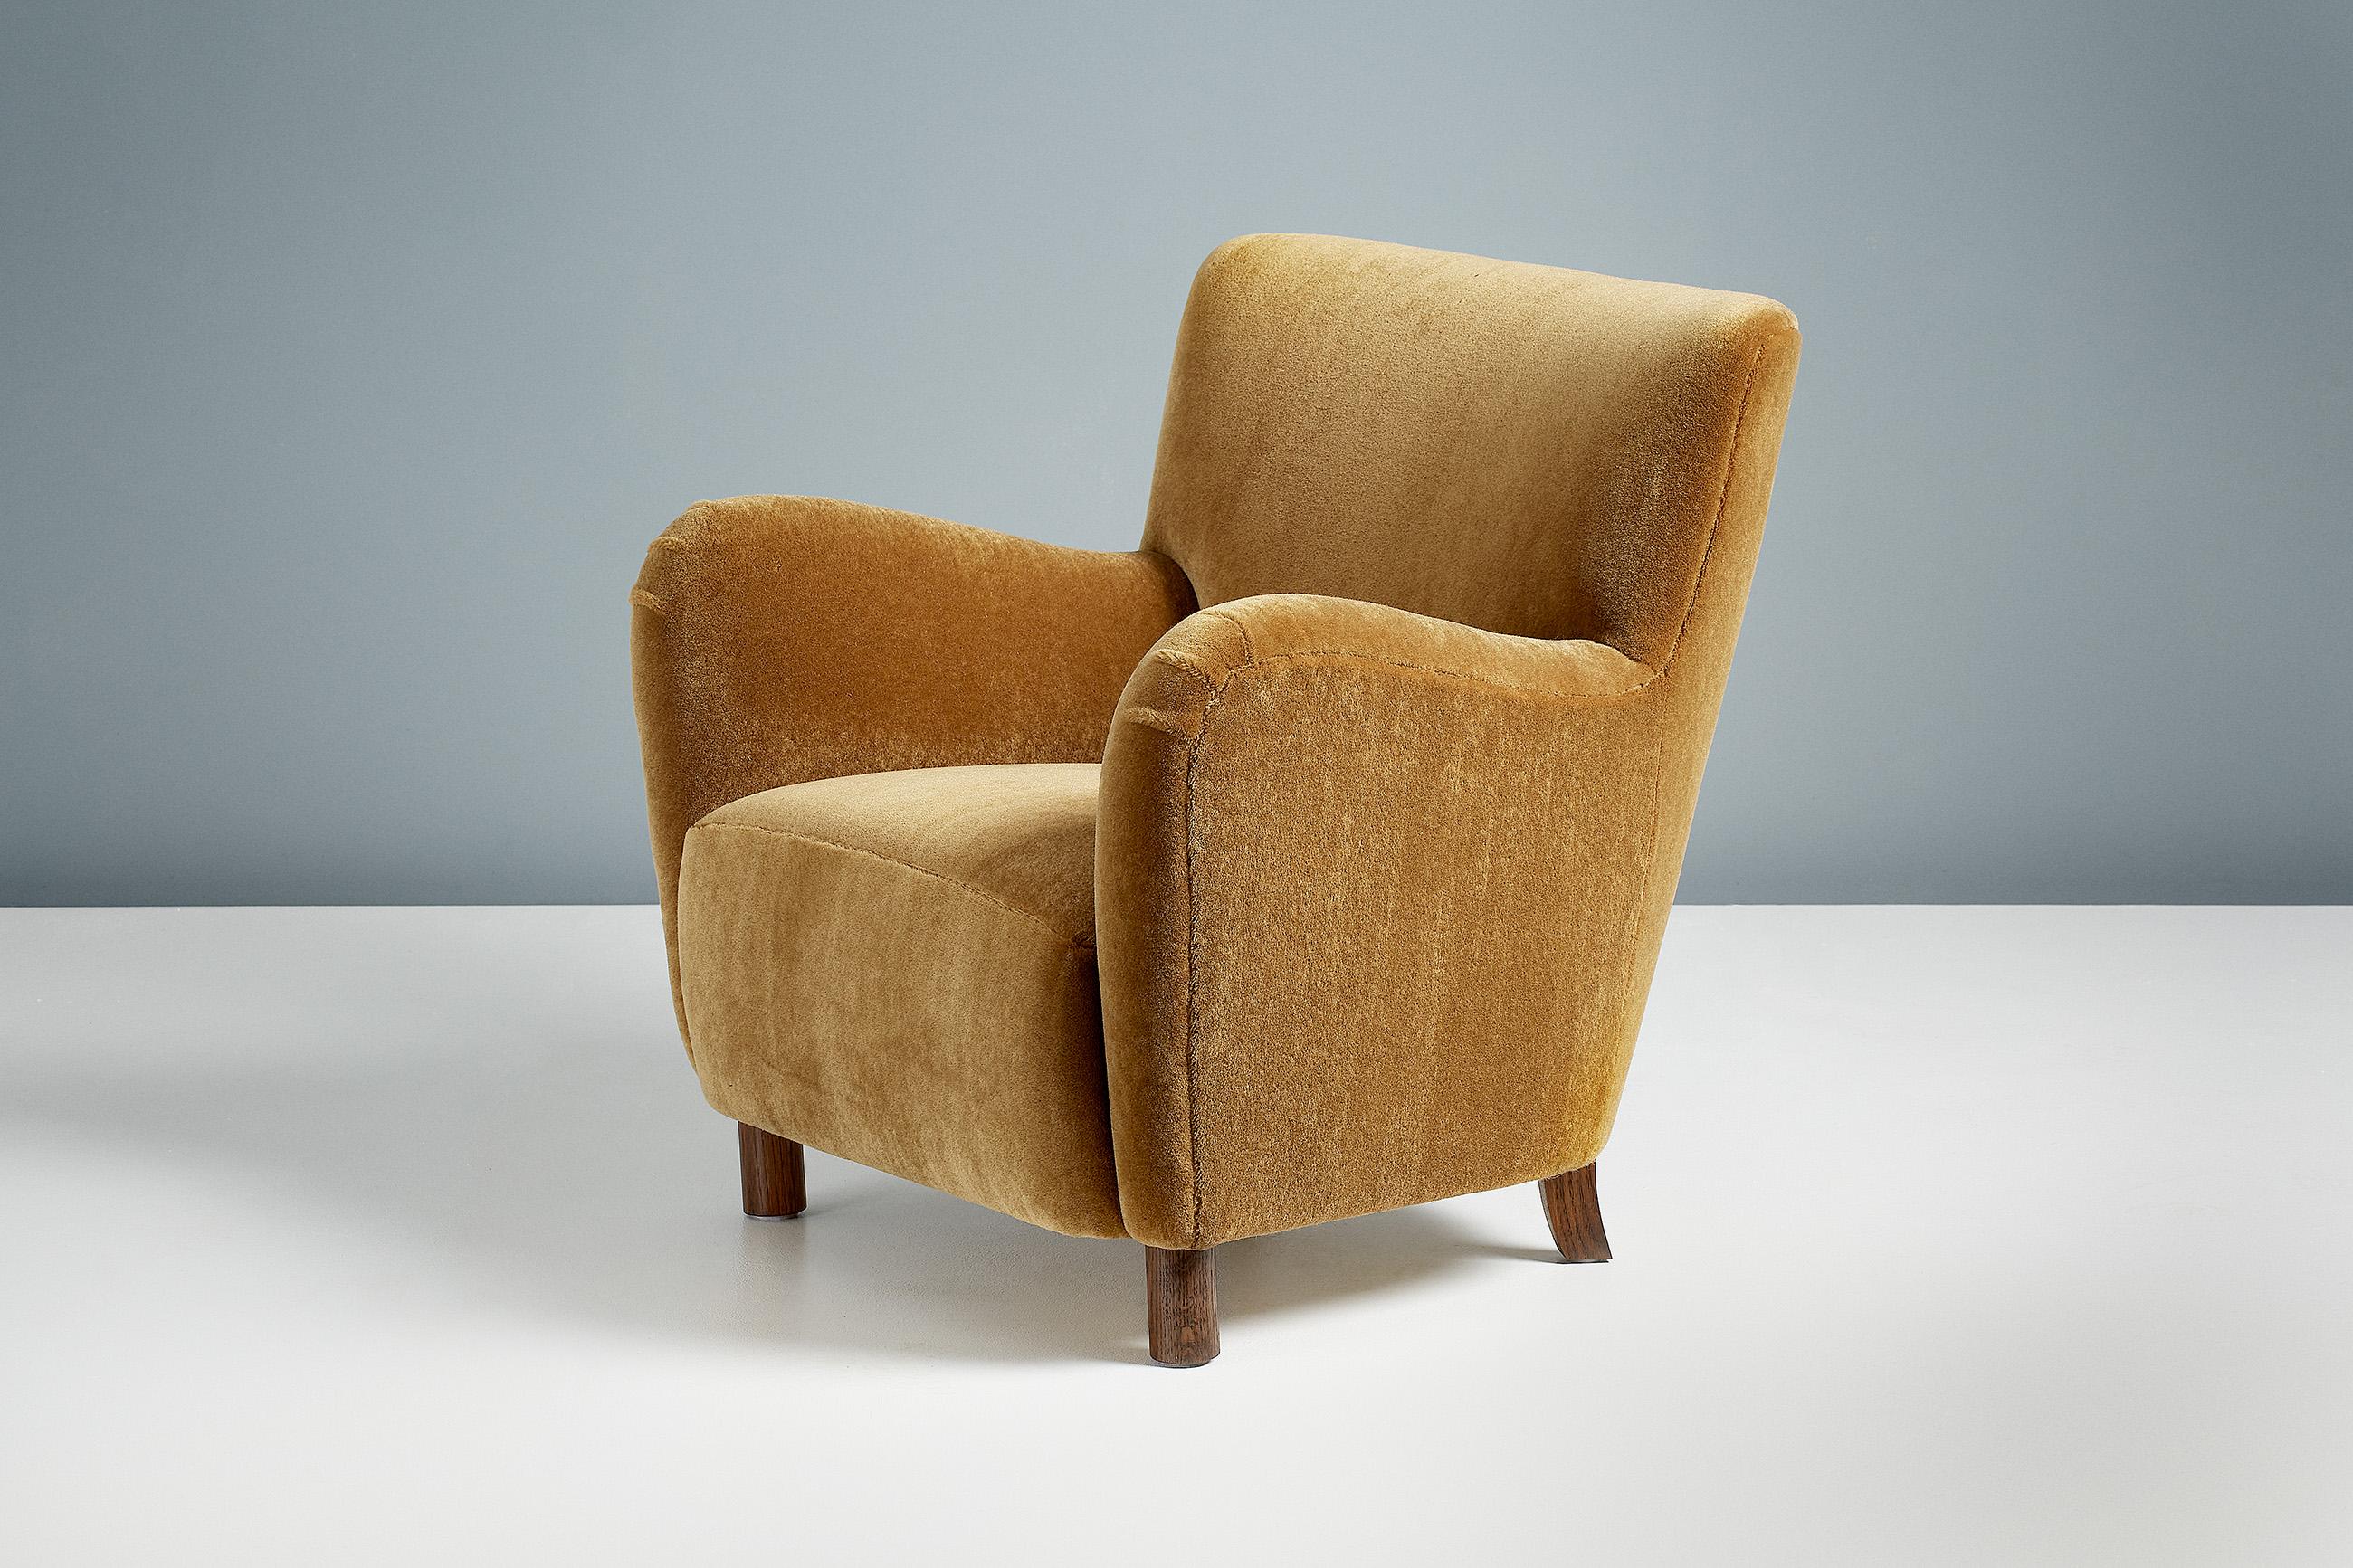 Design/One

Chaise longue modèle 54

Une chaise longue sur mesure développée et fabriquée à la main dans nos ateliers à Londres avec des matériaux de la plus haute qualité. La chaise 54 est disponible sur commande dans une gamme de couleurs et